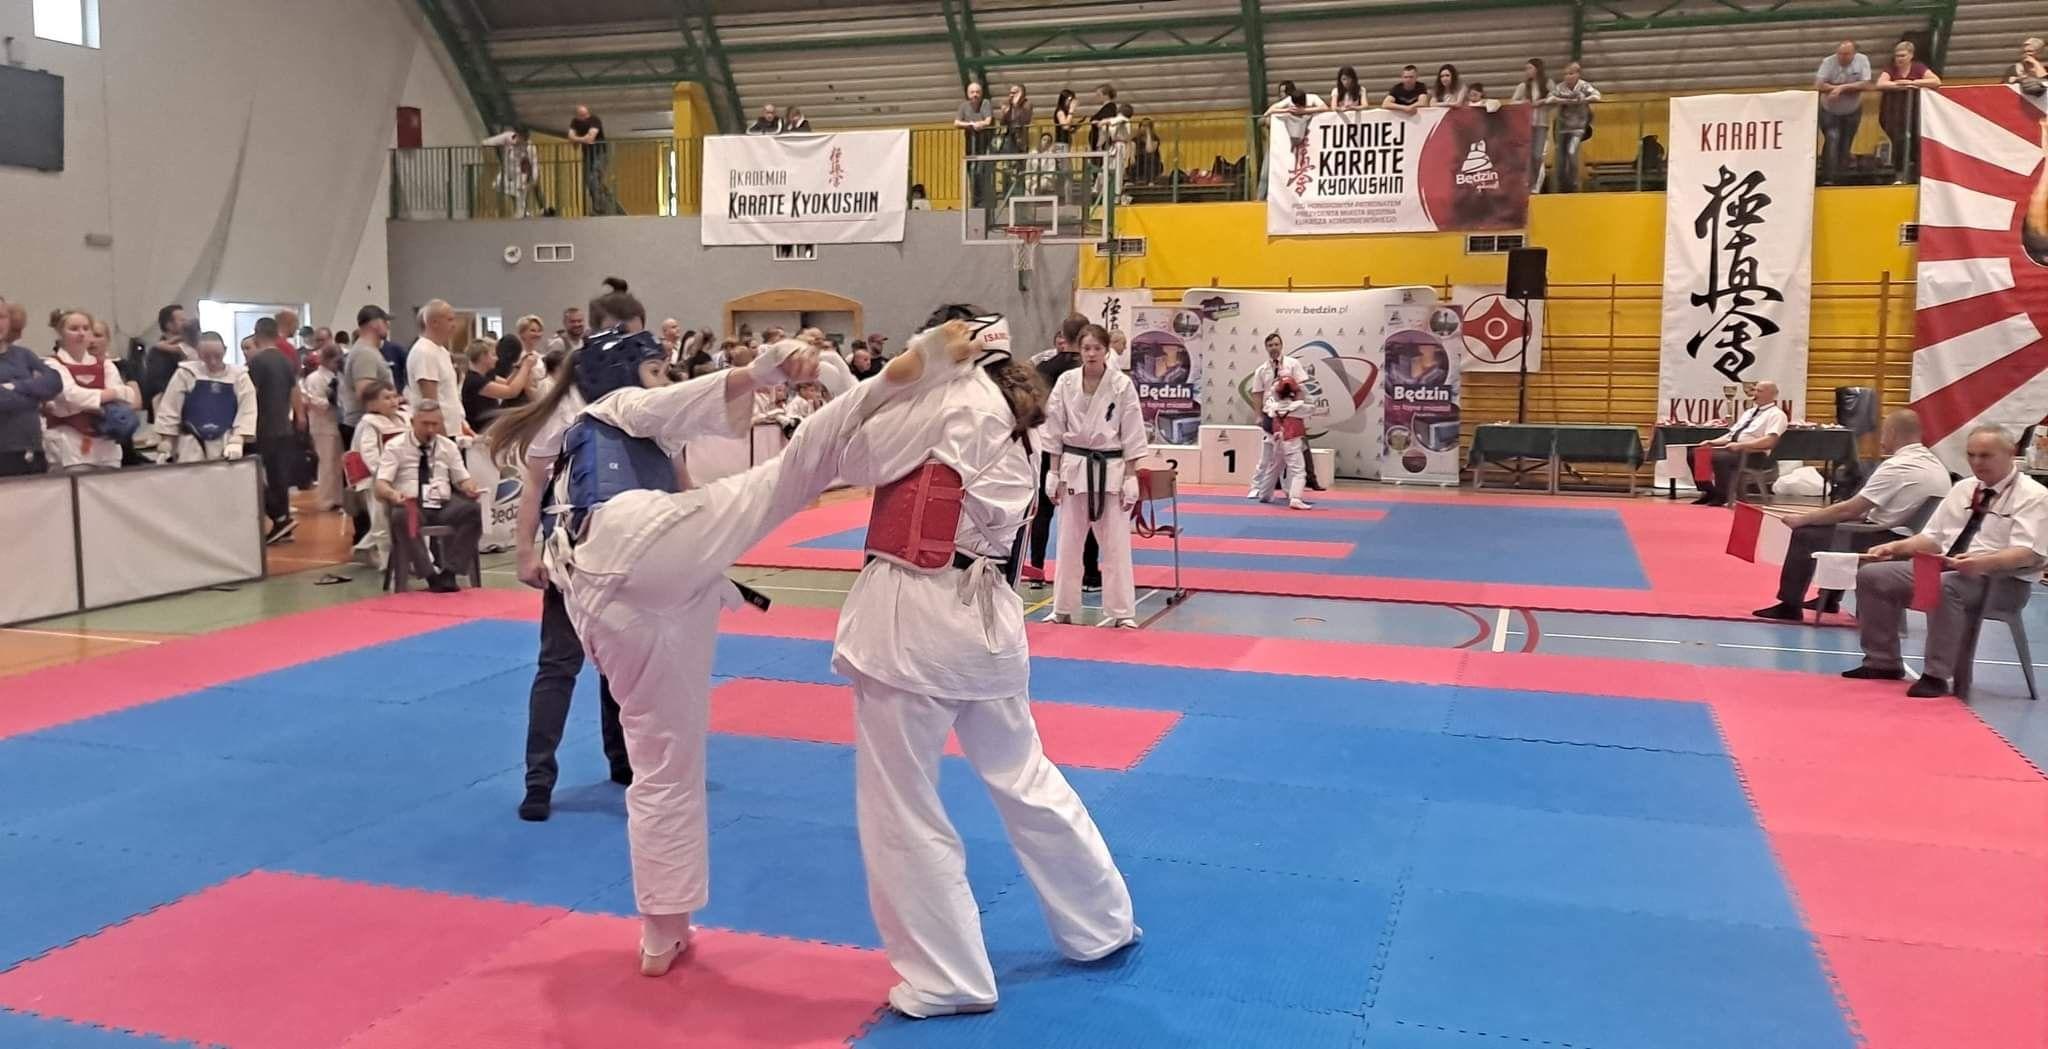 Zdj. nr. 1. Ogólnopolski Turniej Karate Kyokushin - 7 maja 2022 r., Będzin